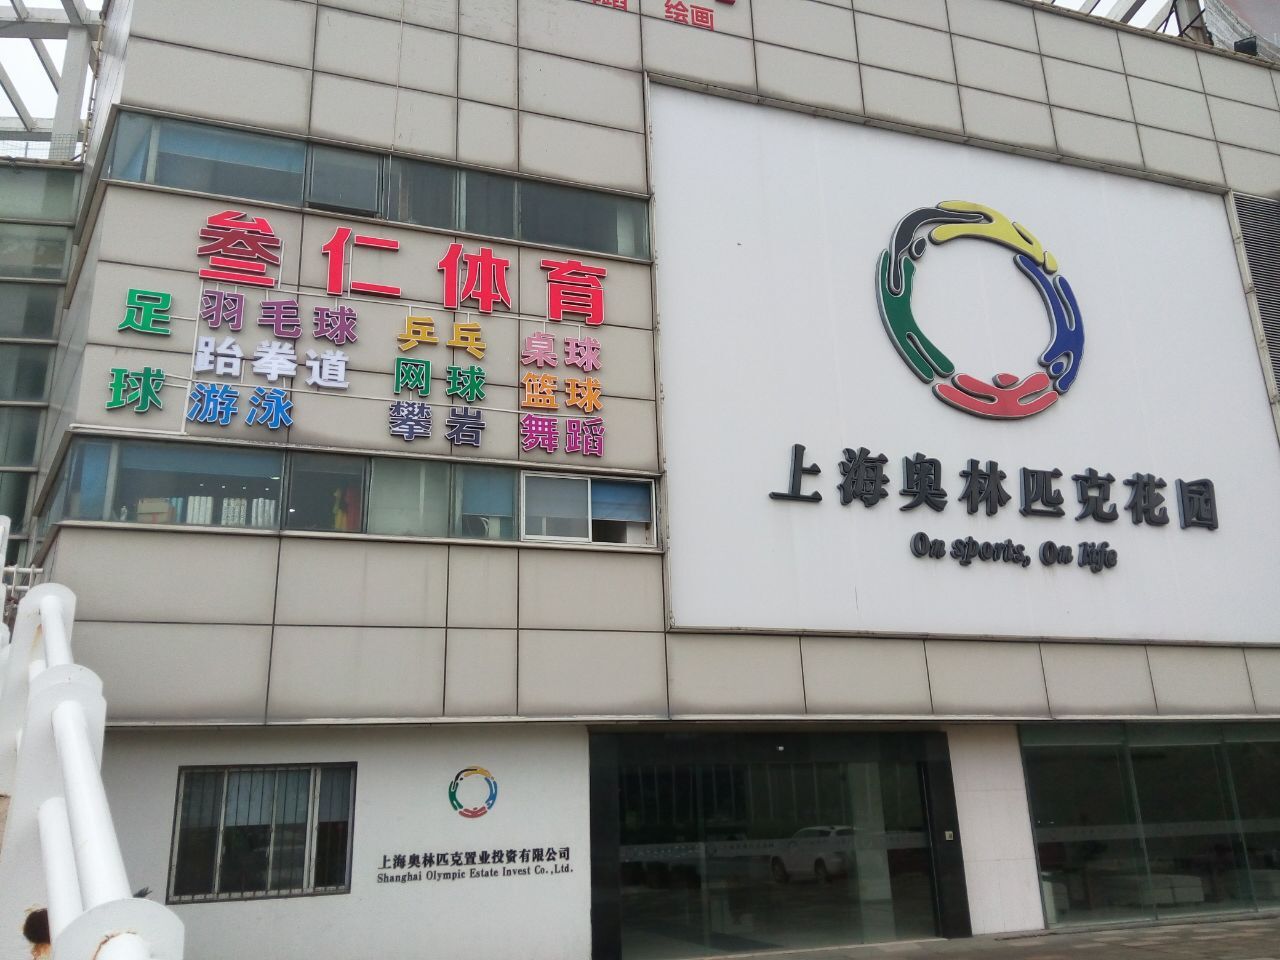 上海叁仁体育中心乒乓球预订